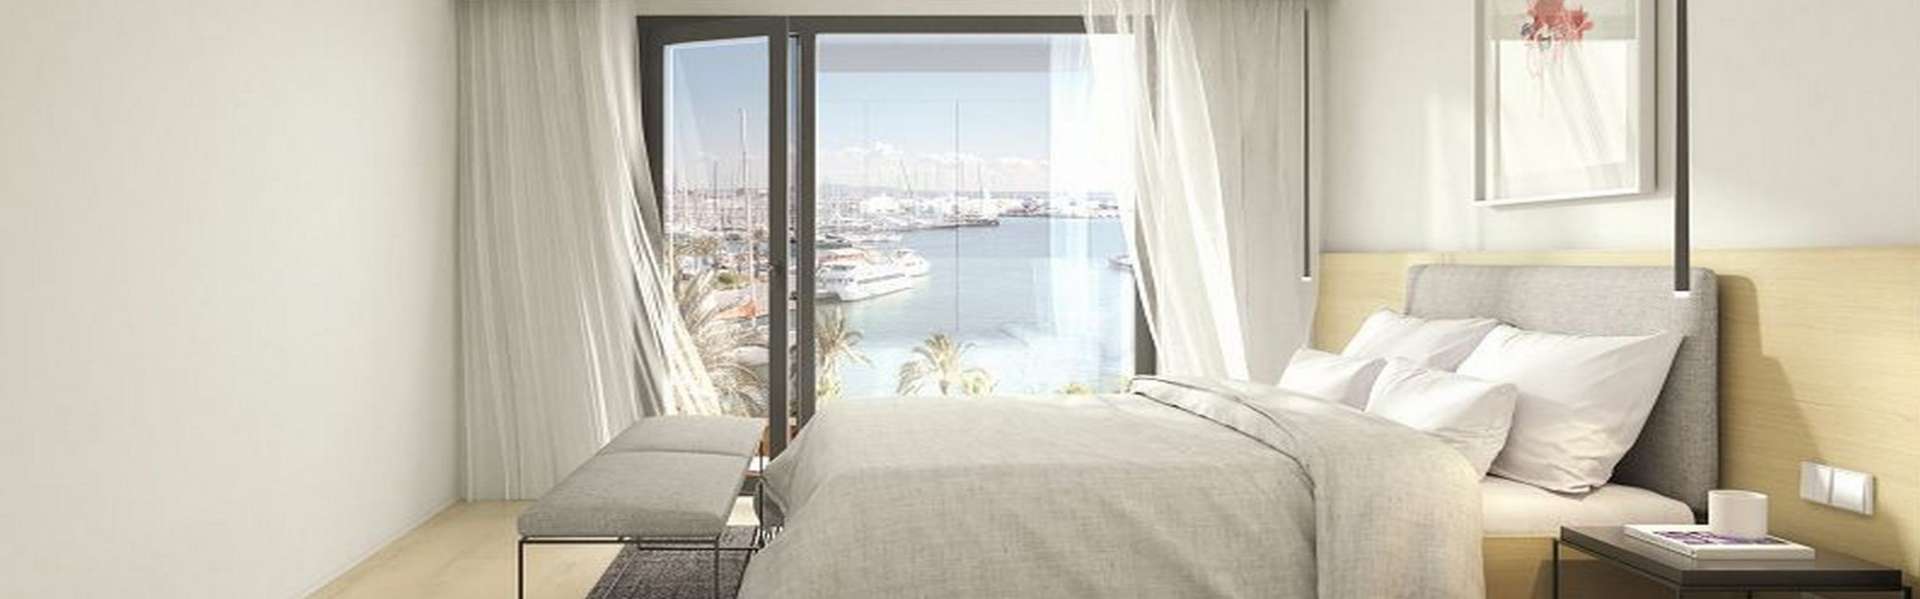 Palma/Paseo Marítimo - Apartment mit wunderschönem Ausblick zu verkaufen